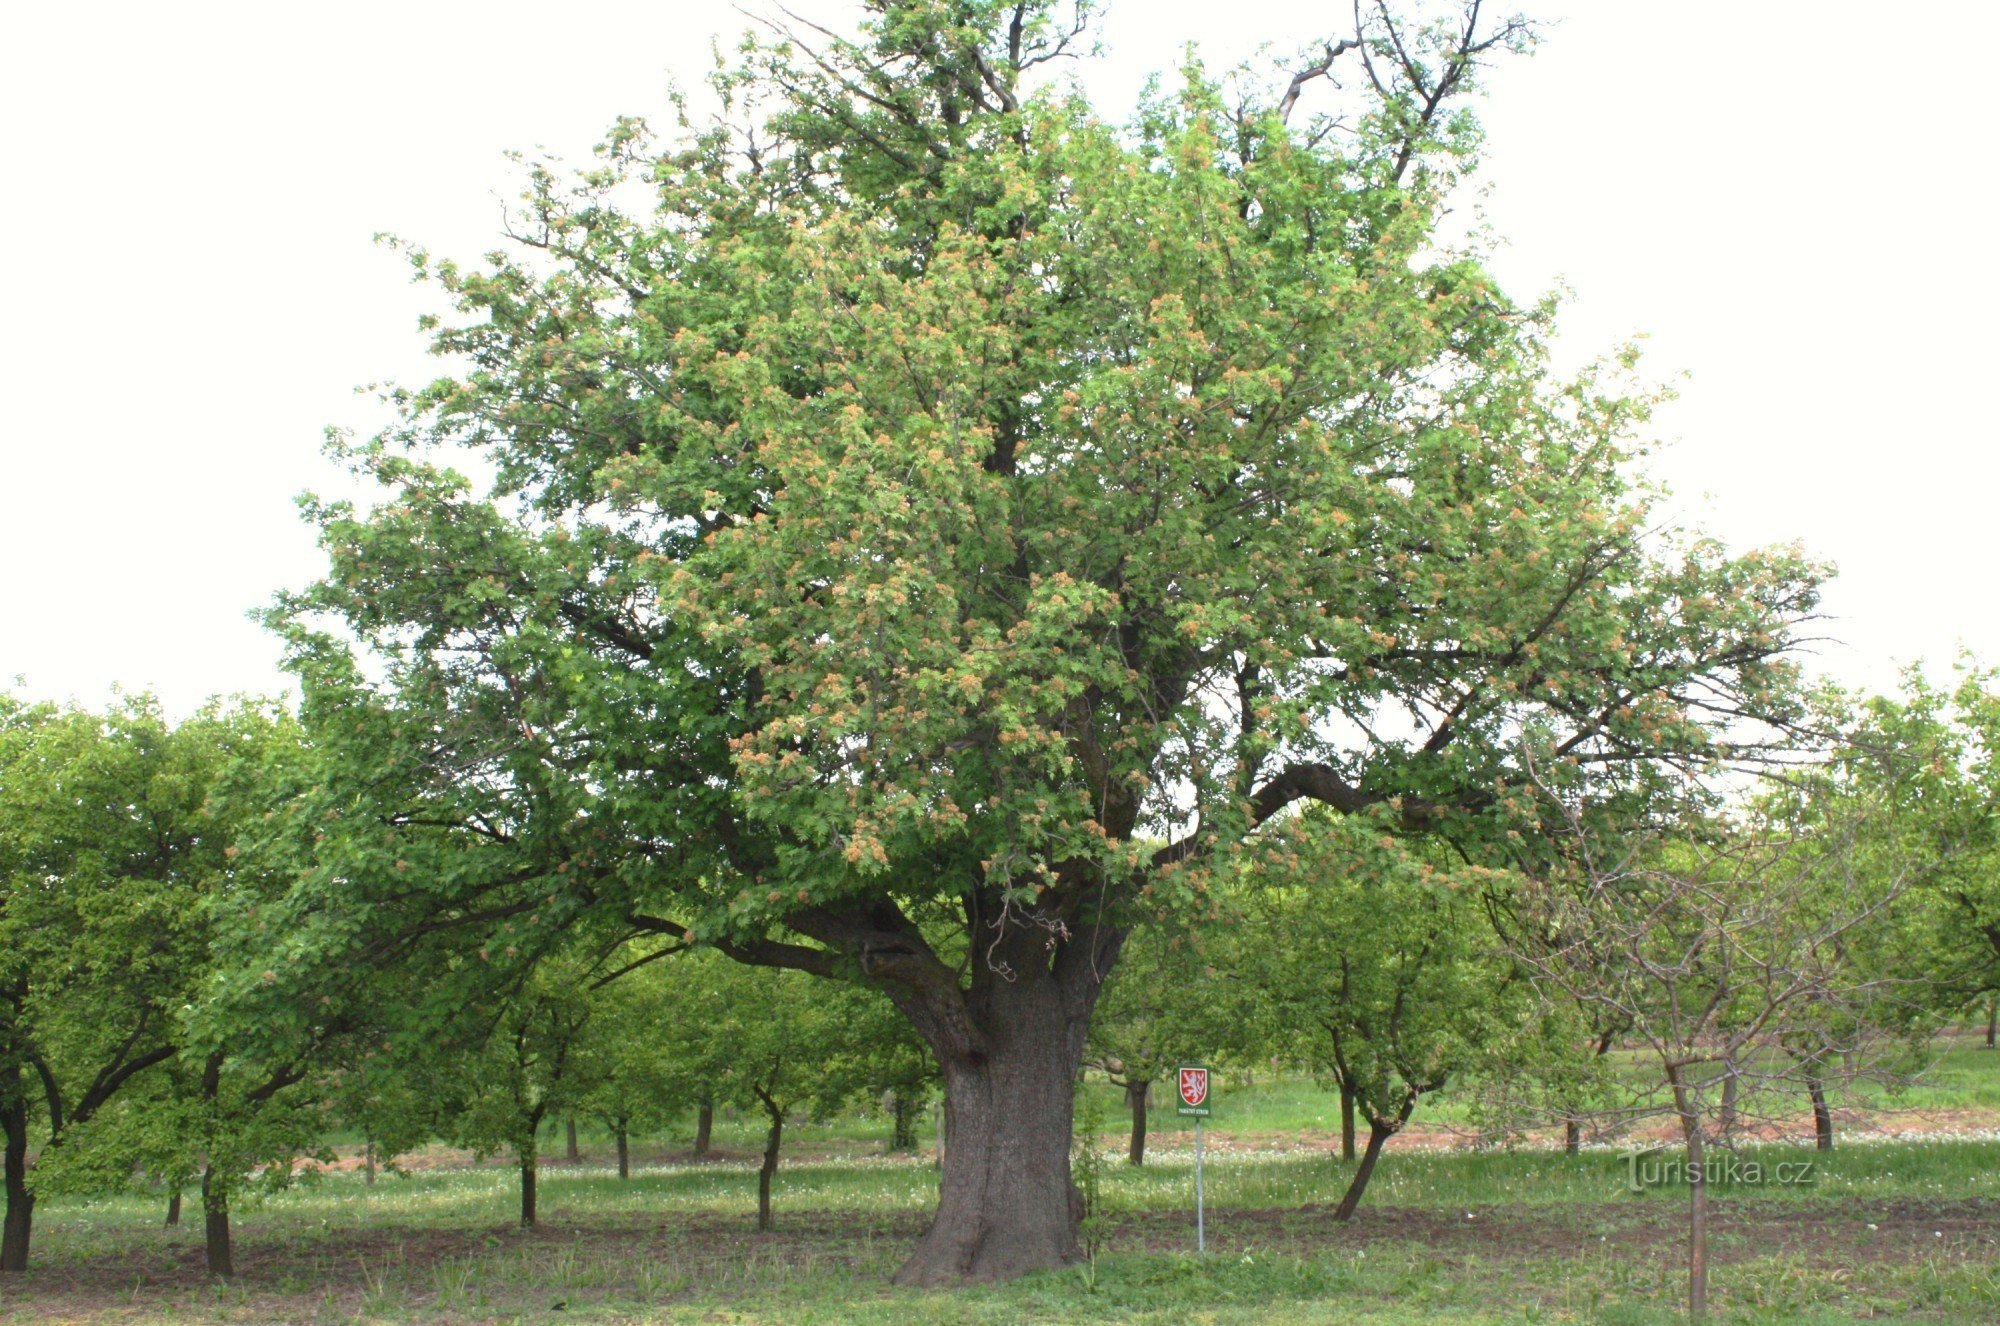 Nemčičky - een gedenkwaardige kersenboom